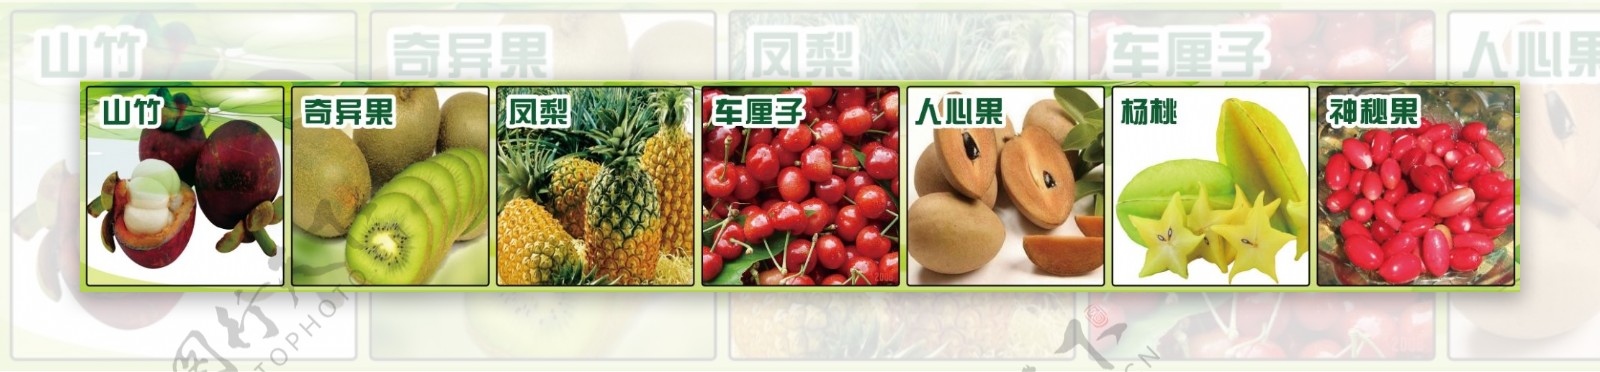 水果分类横幅图片